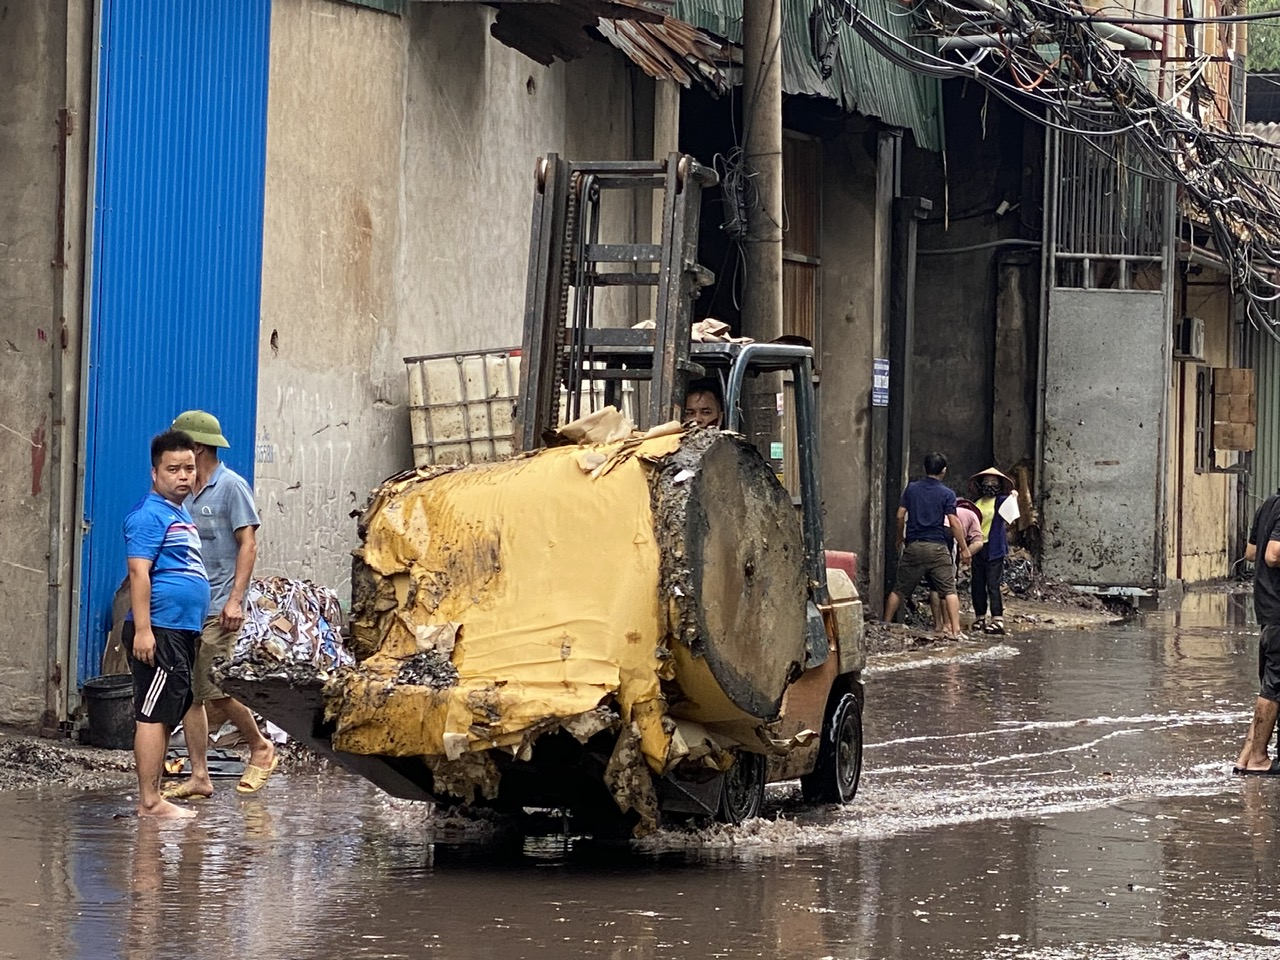 Bắc Ninh: Những cuộn giấy cháy dở chất đống rìa đường sau vụ cháy xưởng sản xuất giấy ở Phong Khê - Ảnh 2.